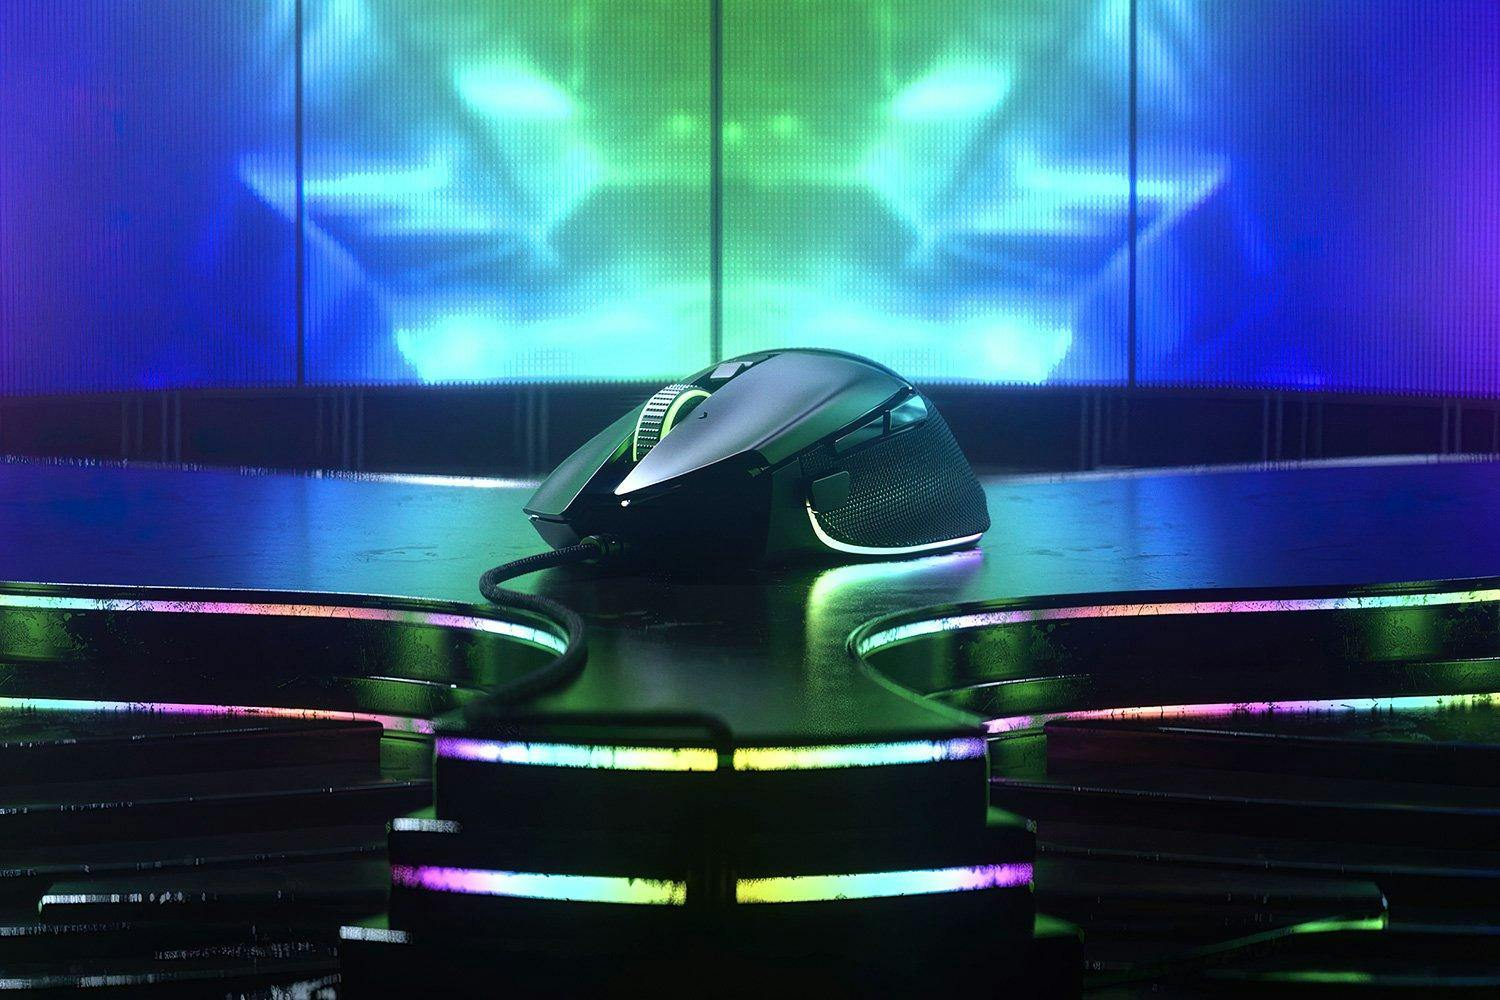 Razer Basilisk Wired Gaming Mouse